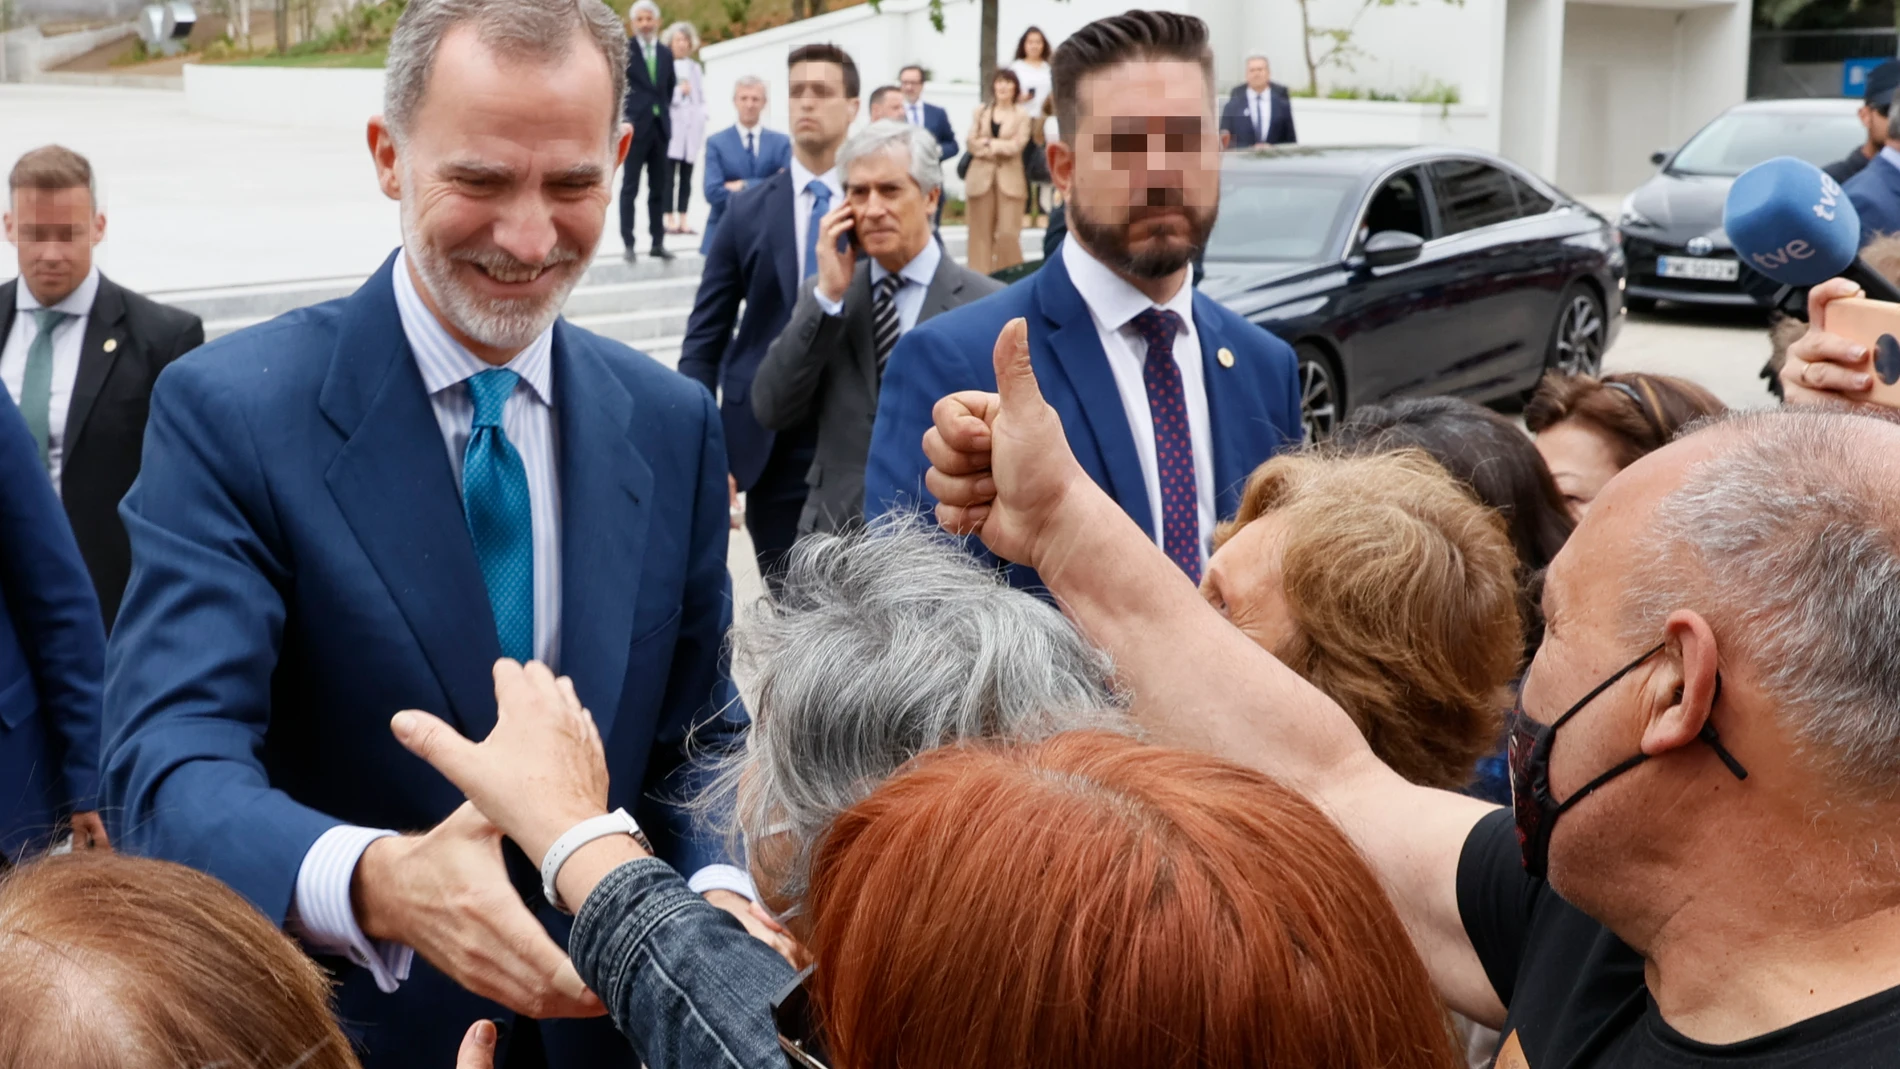 VIGO, 24/05/2022.- El rey Felipe VI saluda a la gente que se congregó para verle este lunes, tras la inauguración de la Ciudad de la Justicia de Vigo. EFE/ Lavandeira Jr